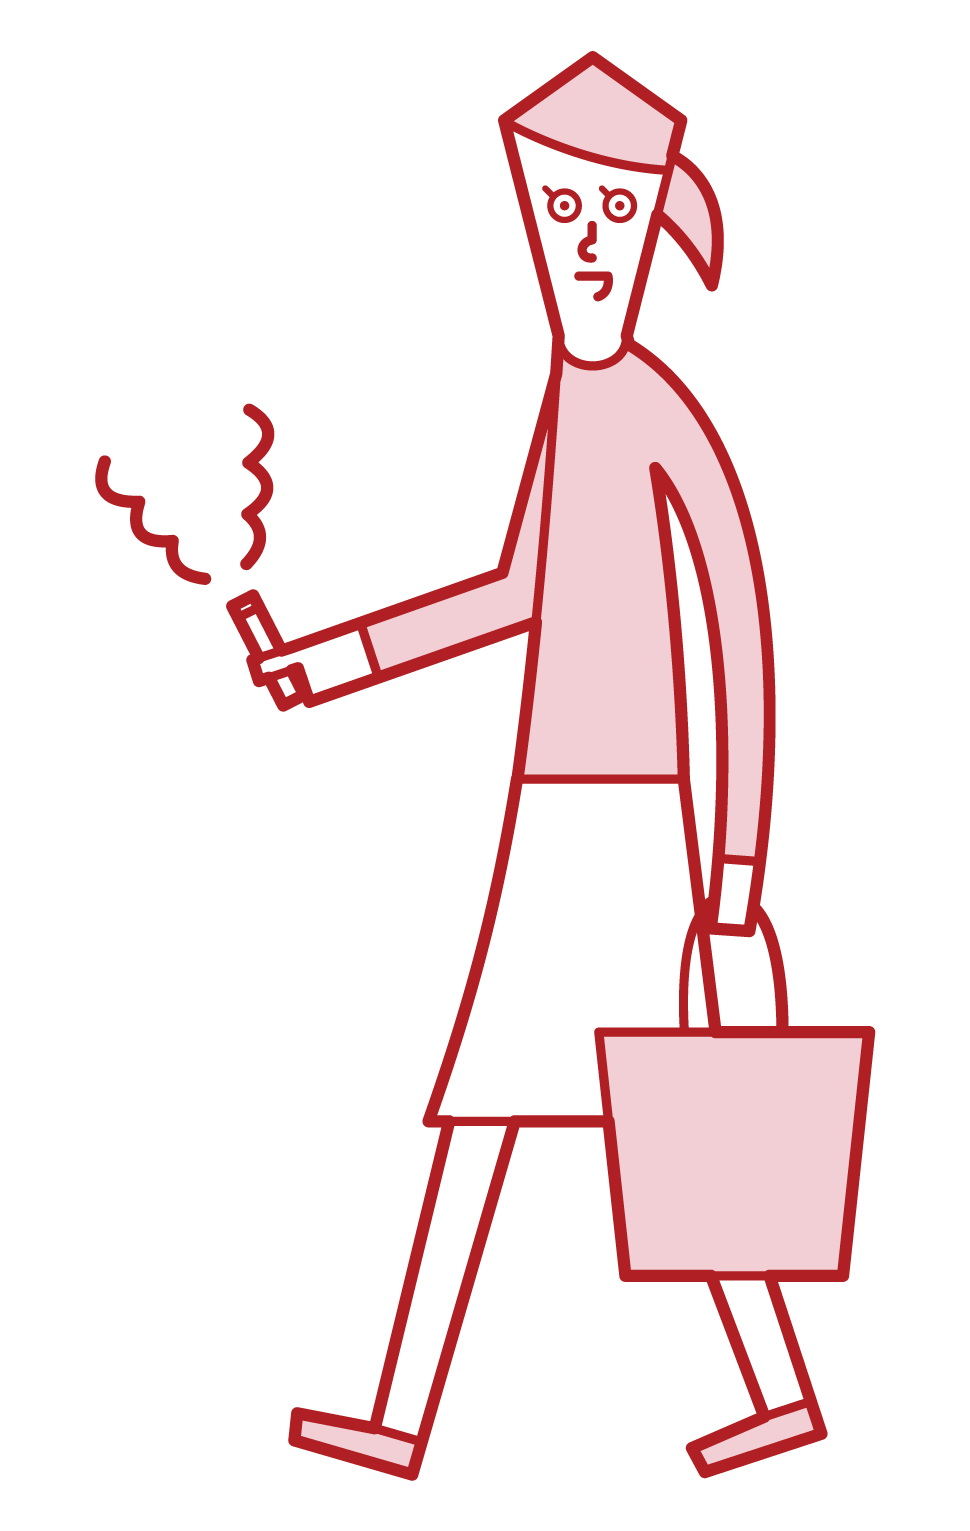 걸을 때 담배를 피우는 사람 (여성)의 그림